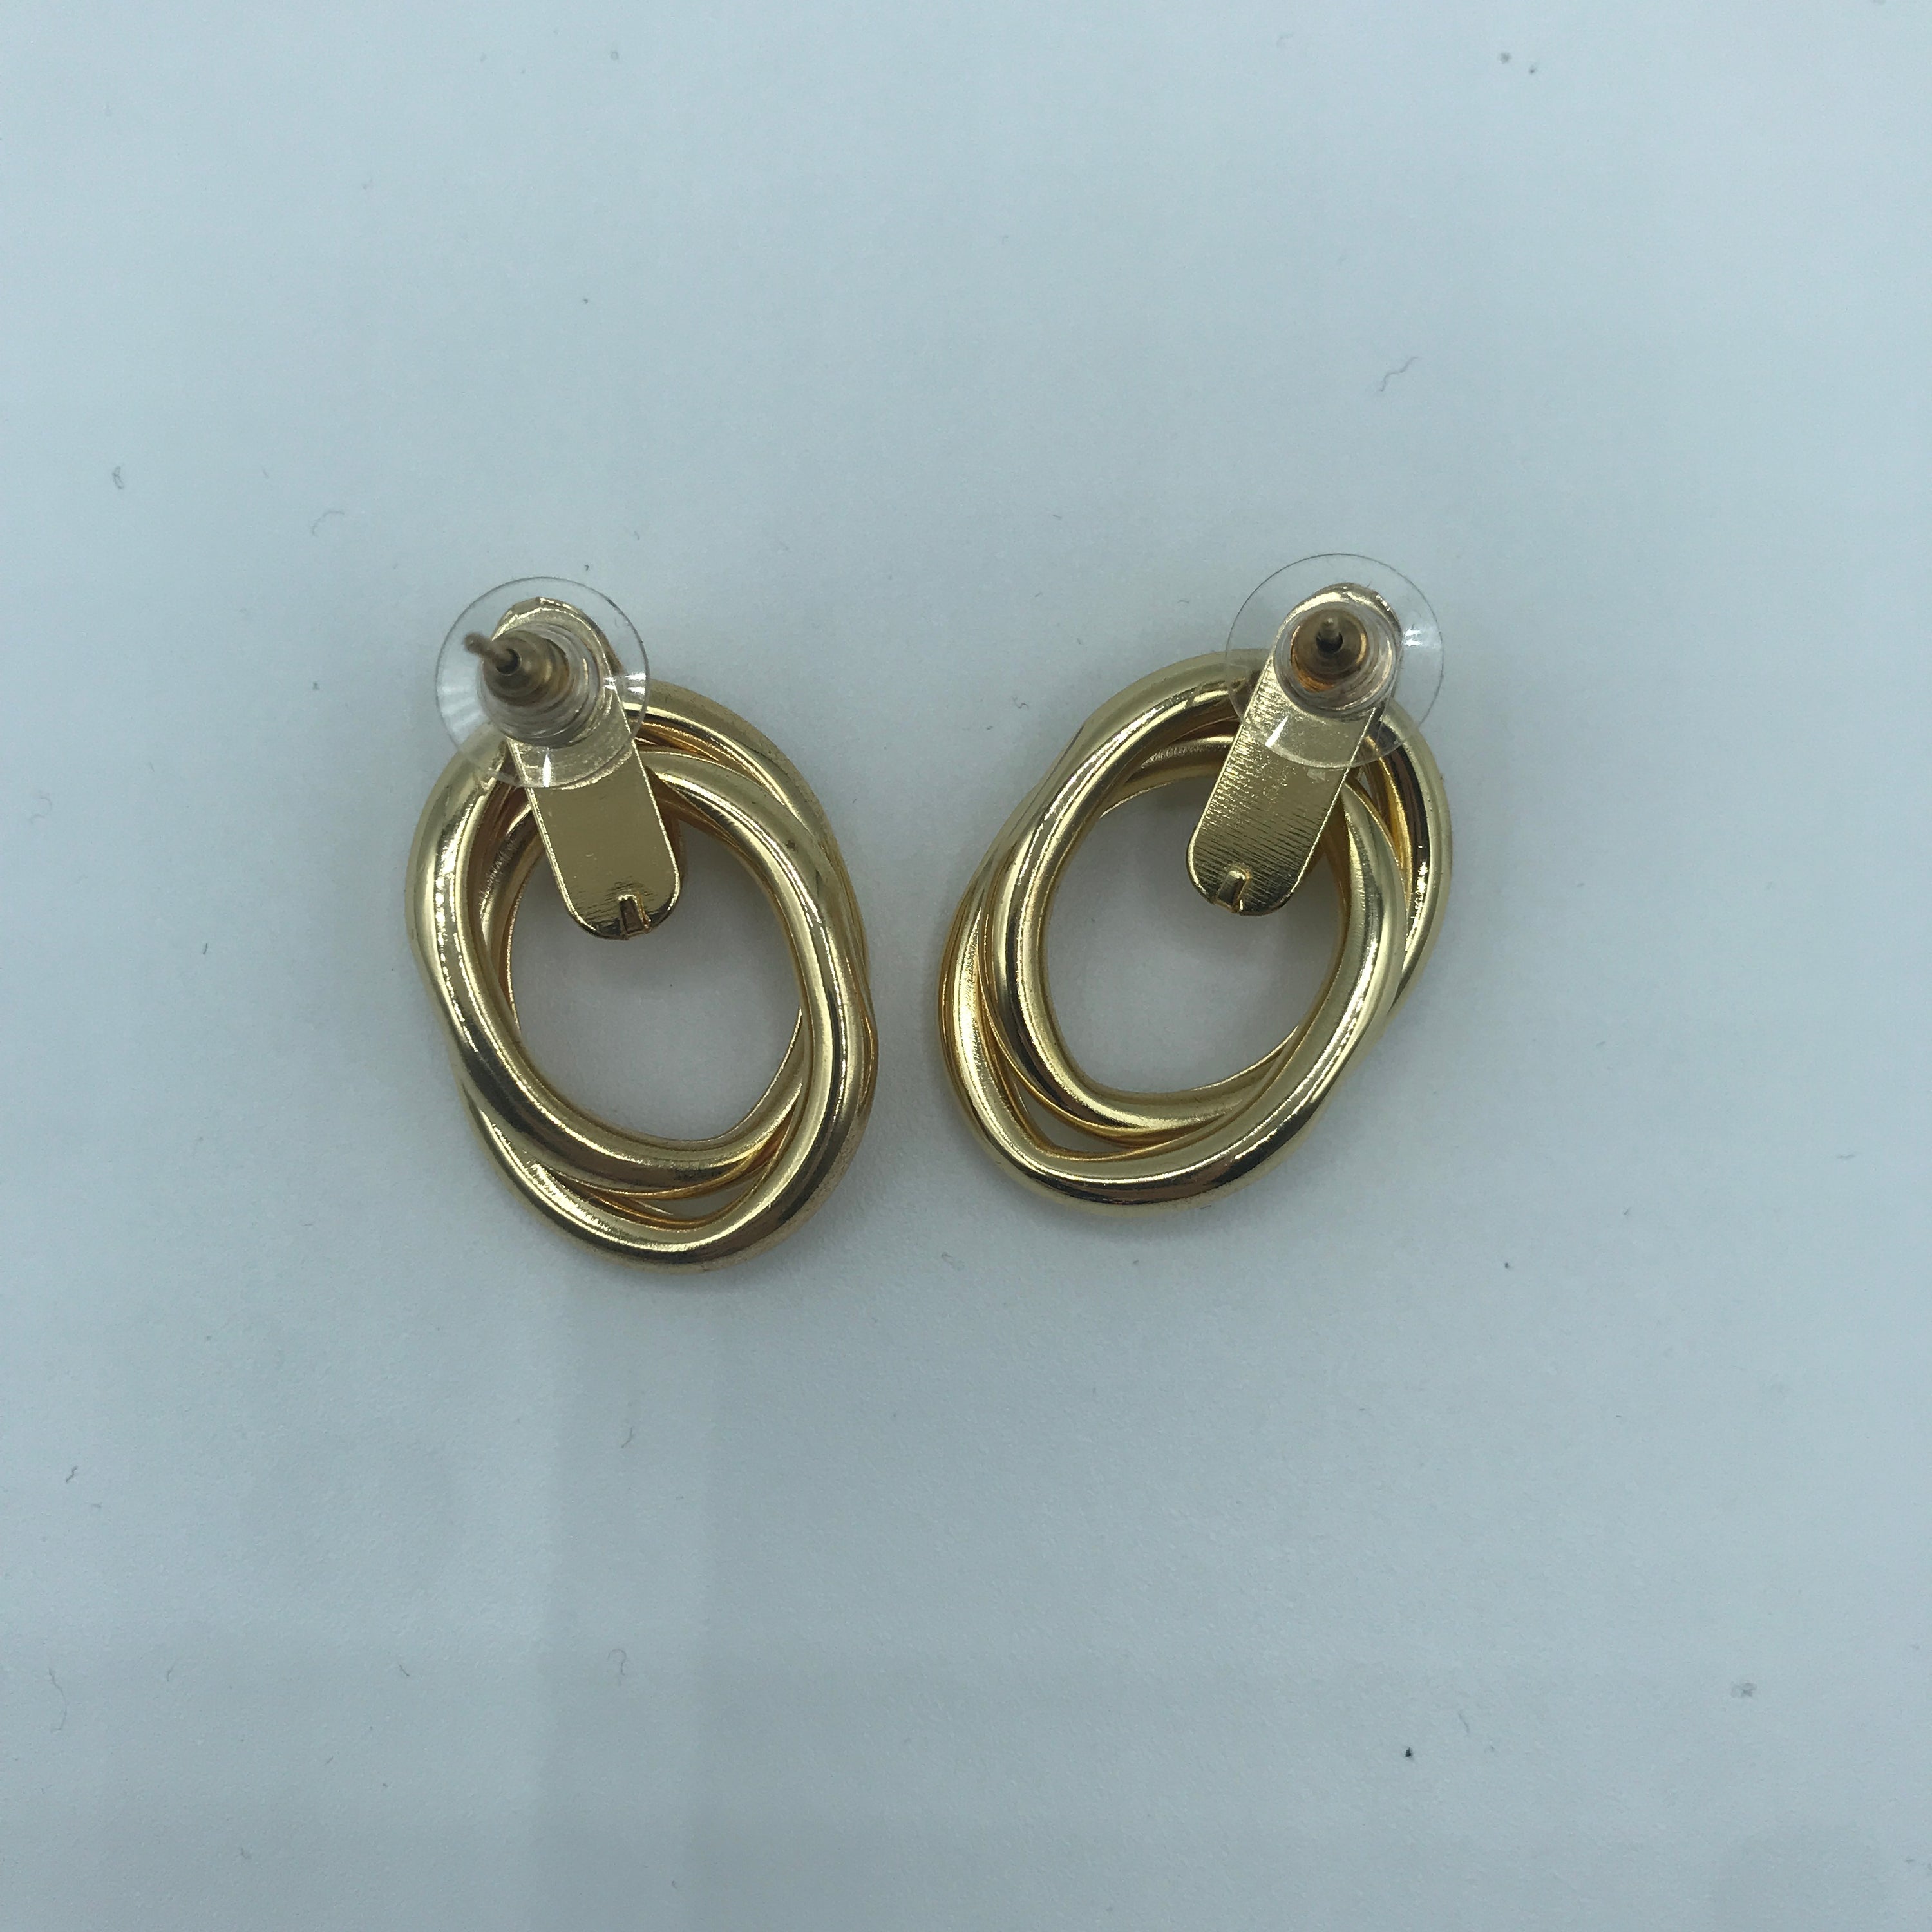 Steel Alloy Crossed Oval Hoop Earrings - 3.7cm, 12g - Jewelry & Watches - Bijou Her -  -  - 